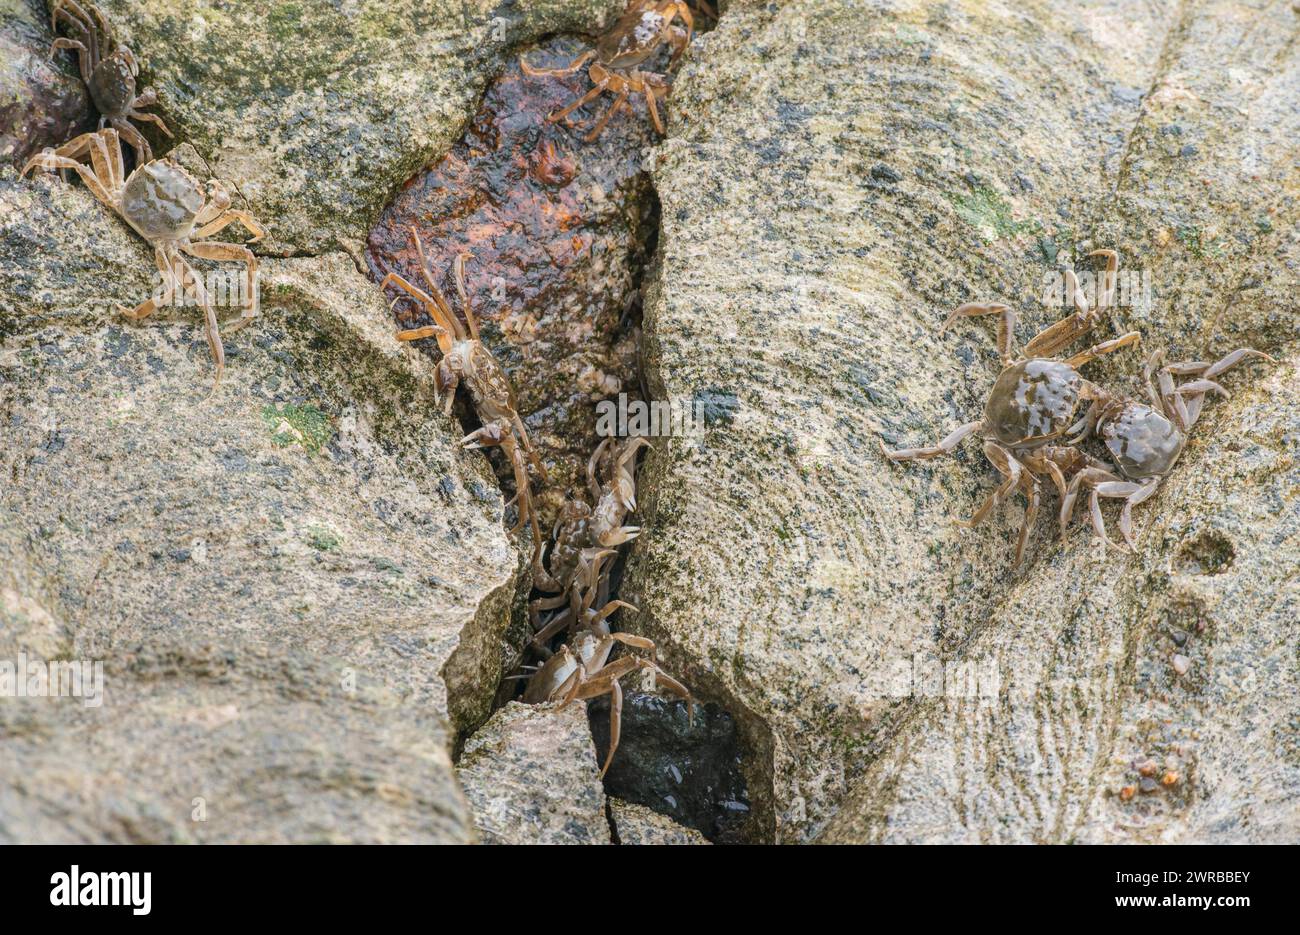 Viele chinesische Fäustkrabben (Eriocheir sinensis), invasive Arten, Neozoon, Krebse, Jungtiere, versteckt sich in einem schmalen Riss zwischen Steinen und kriecht darüber Stockfoto